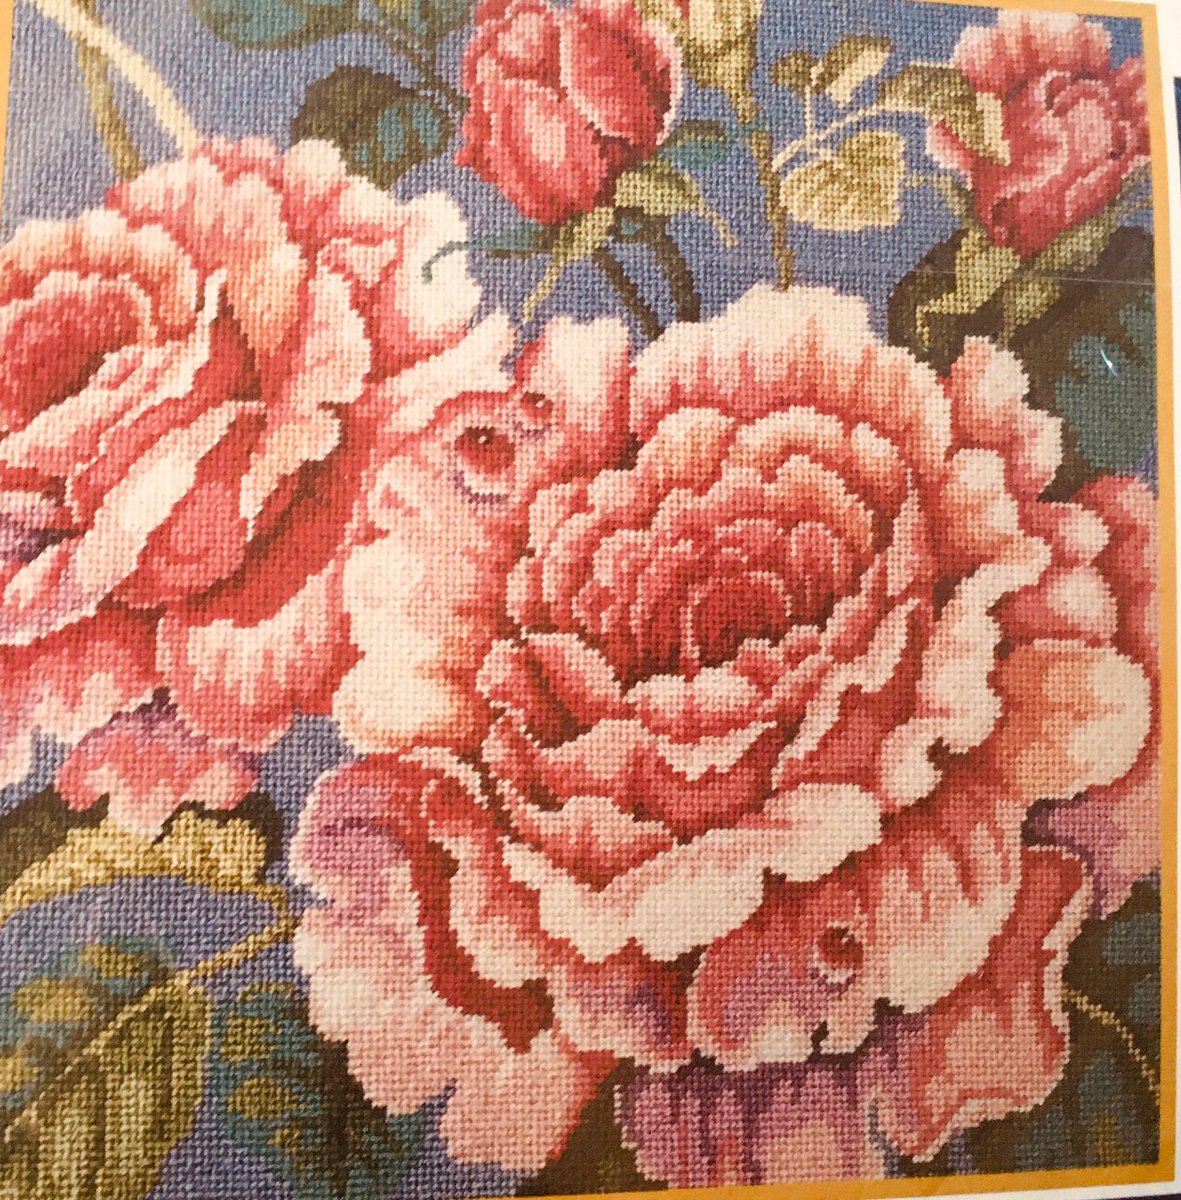 #beautiful #crafts #DIY #etsy #etsyfavorites #etsyfinds #etsygifts #EtsyHandmade #etsylove #EtsySeller #etsyshop #EtsyStarSeller #etsystore #etsyvintage #Flowers #pinkflowers #shabby #shabbydecor #pillows #roses #decor #needlepoint 
addictedtoshabby.etsy.com/listing/119213…